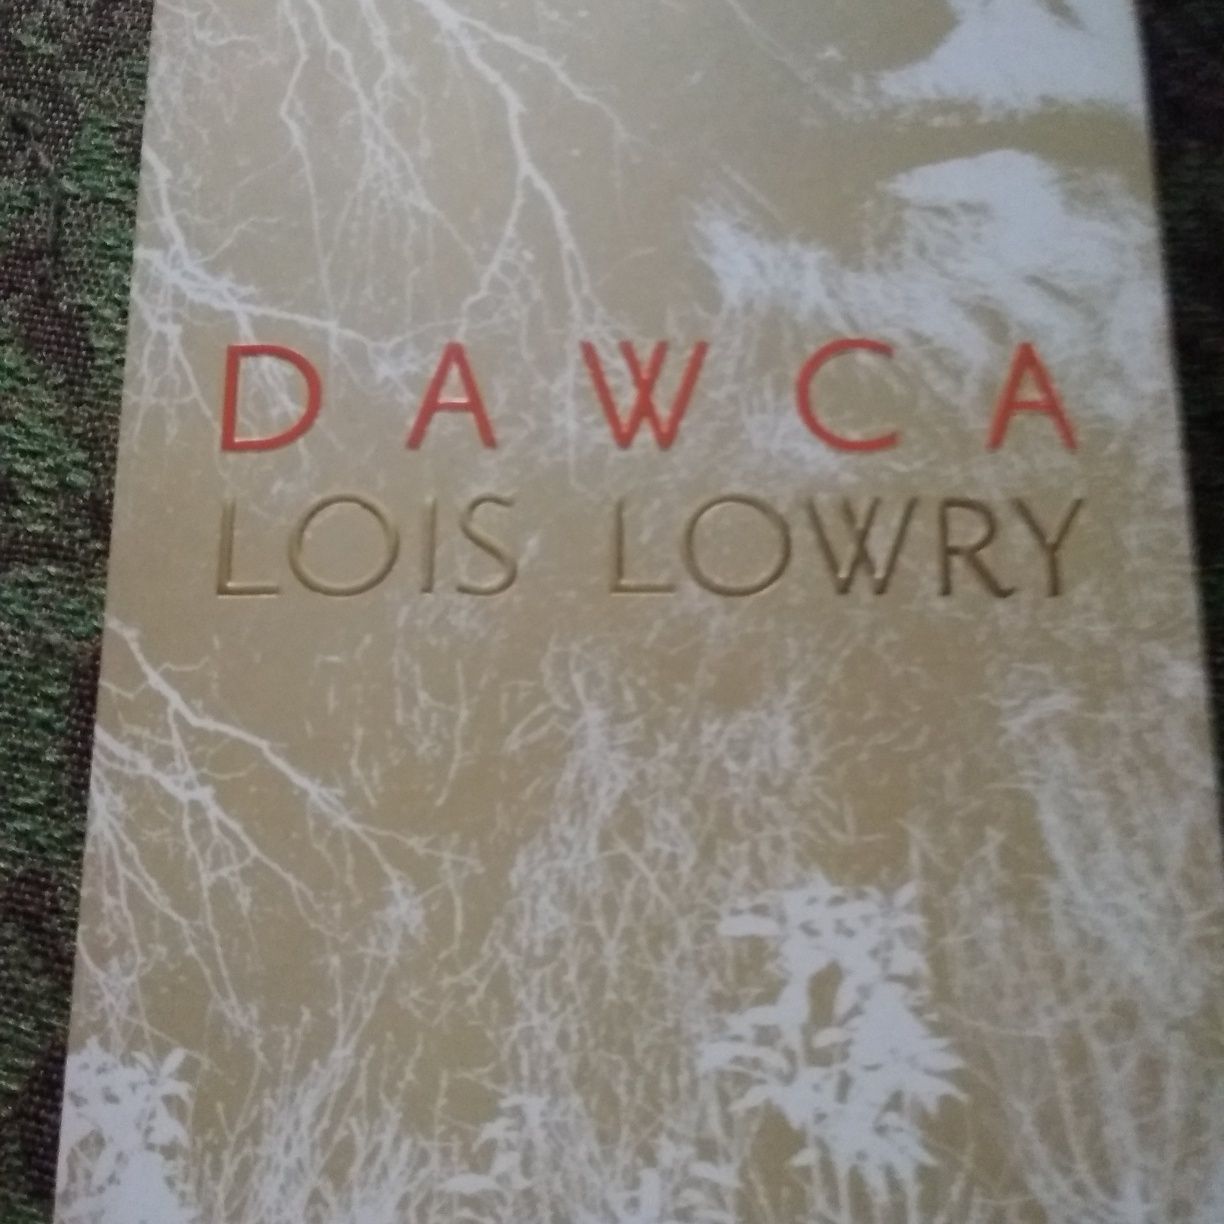 Dawca Lois Lowry